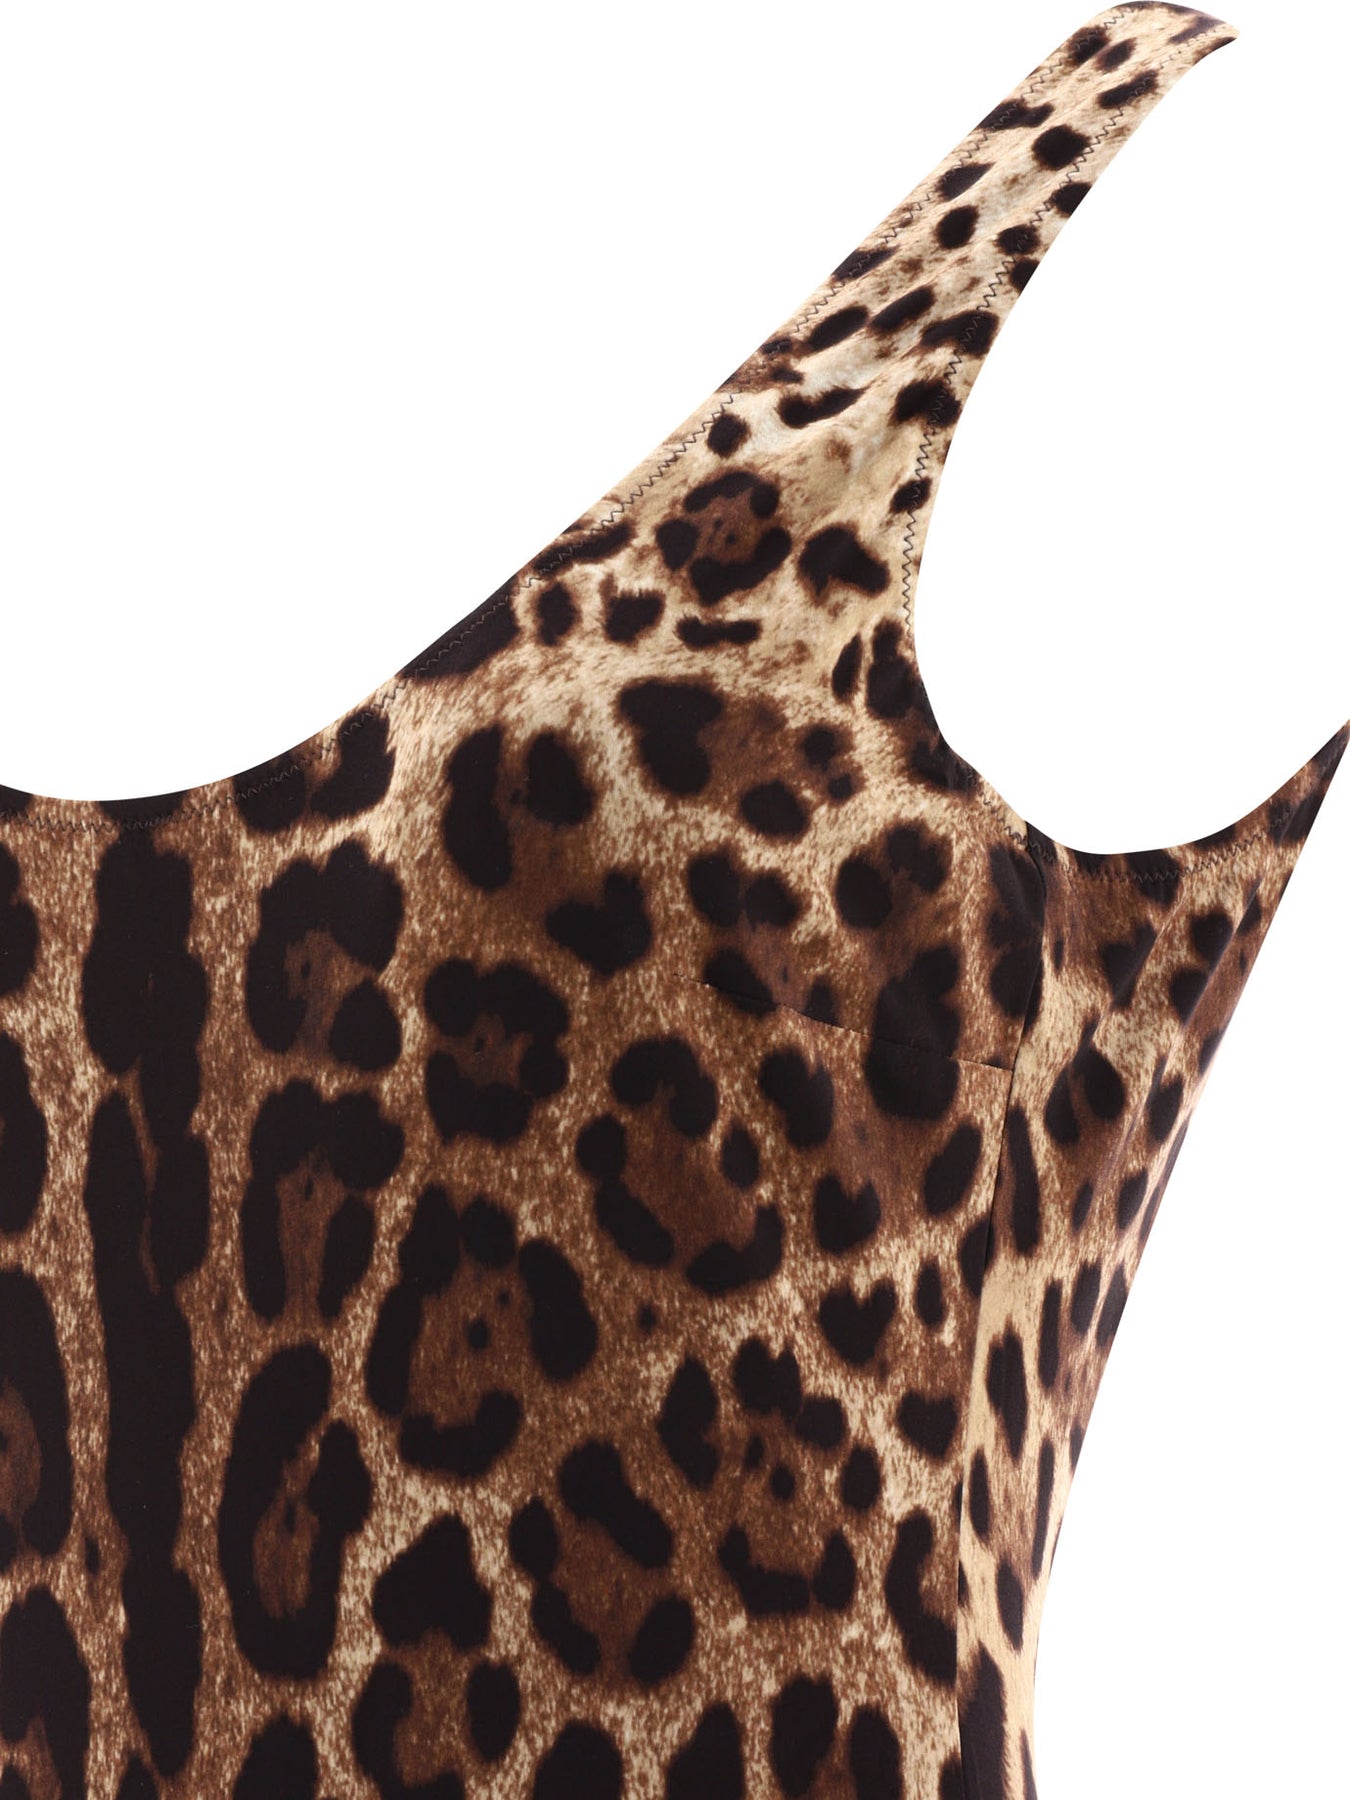 Dolce & Gabbana, leopard prints in abundance